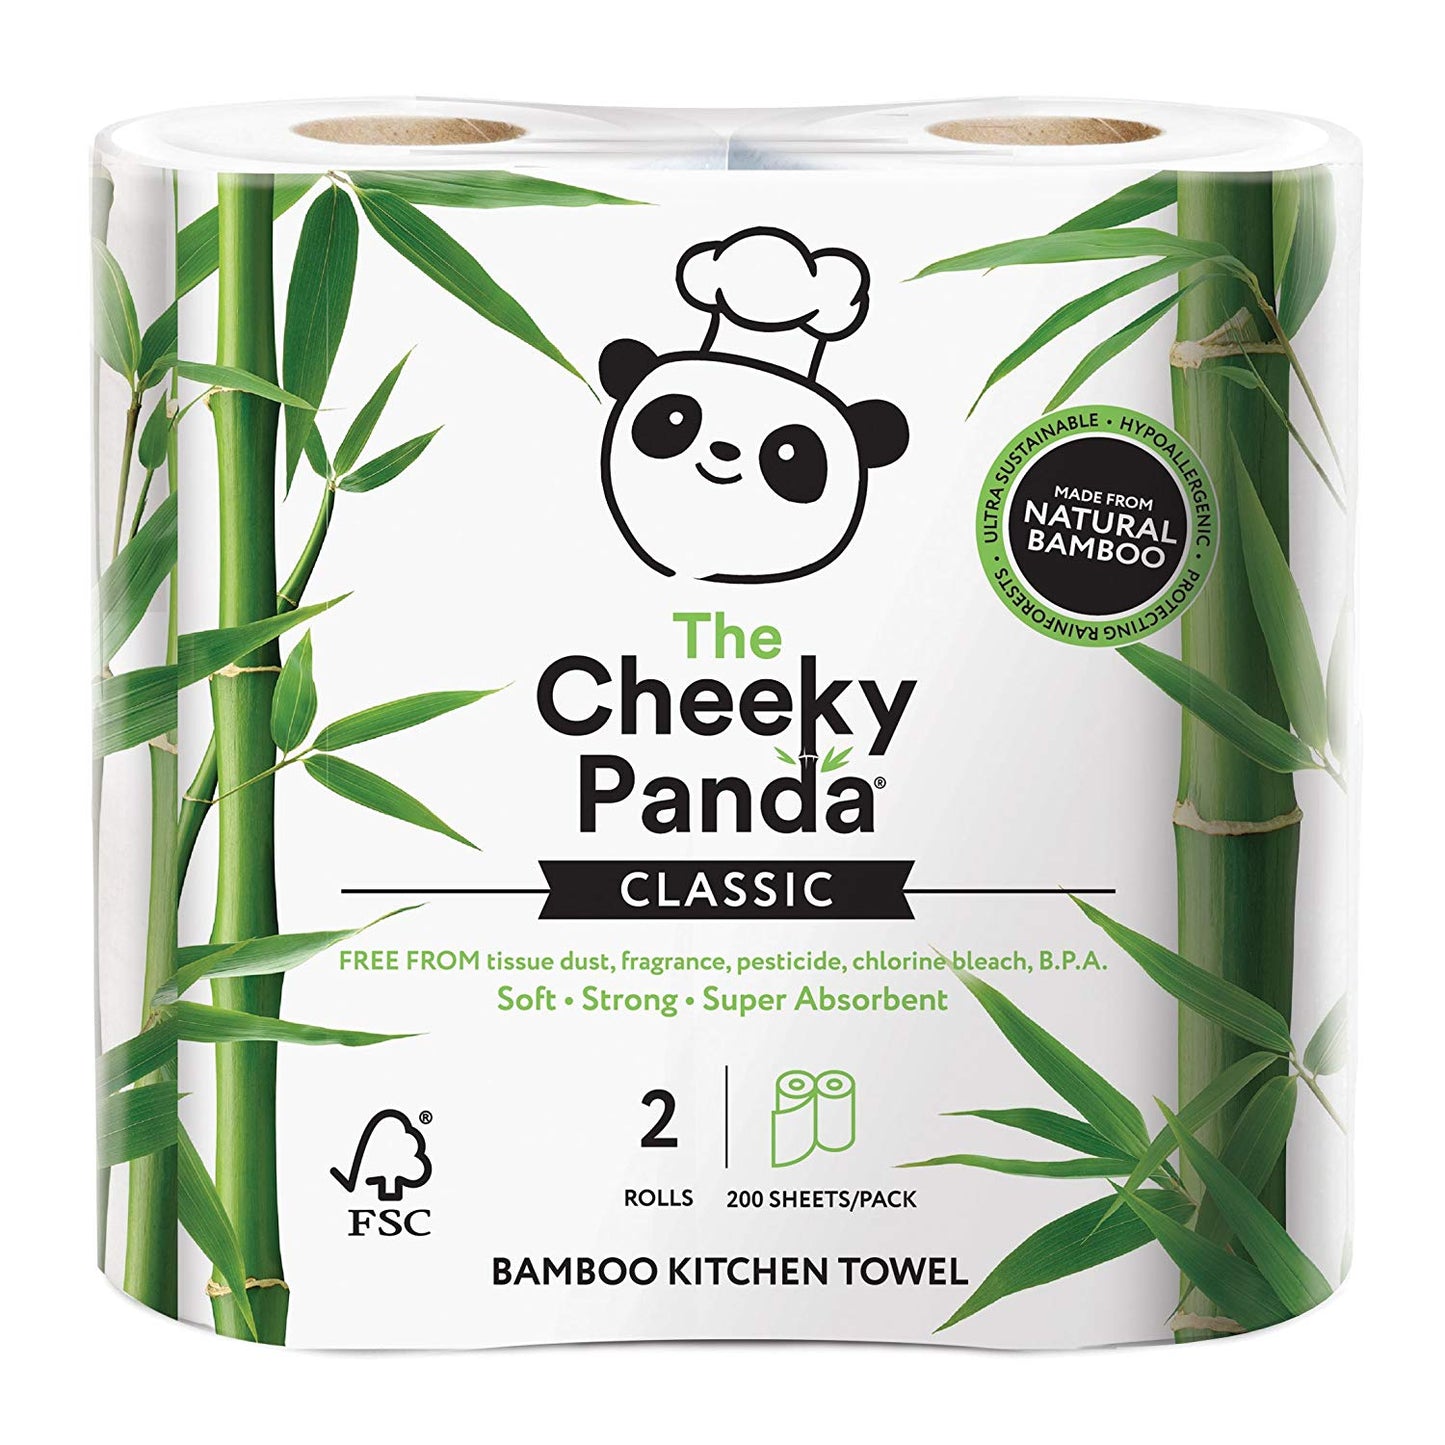 Cheeky Panda 100% bamboo kitchen towel 2 rolls - 200 sheets per pack - Just Natural